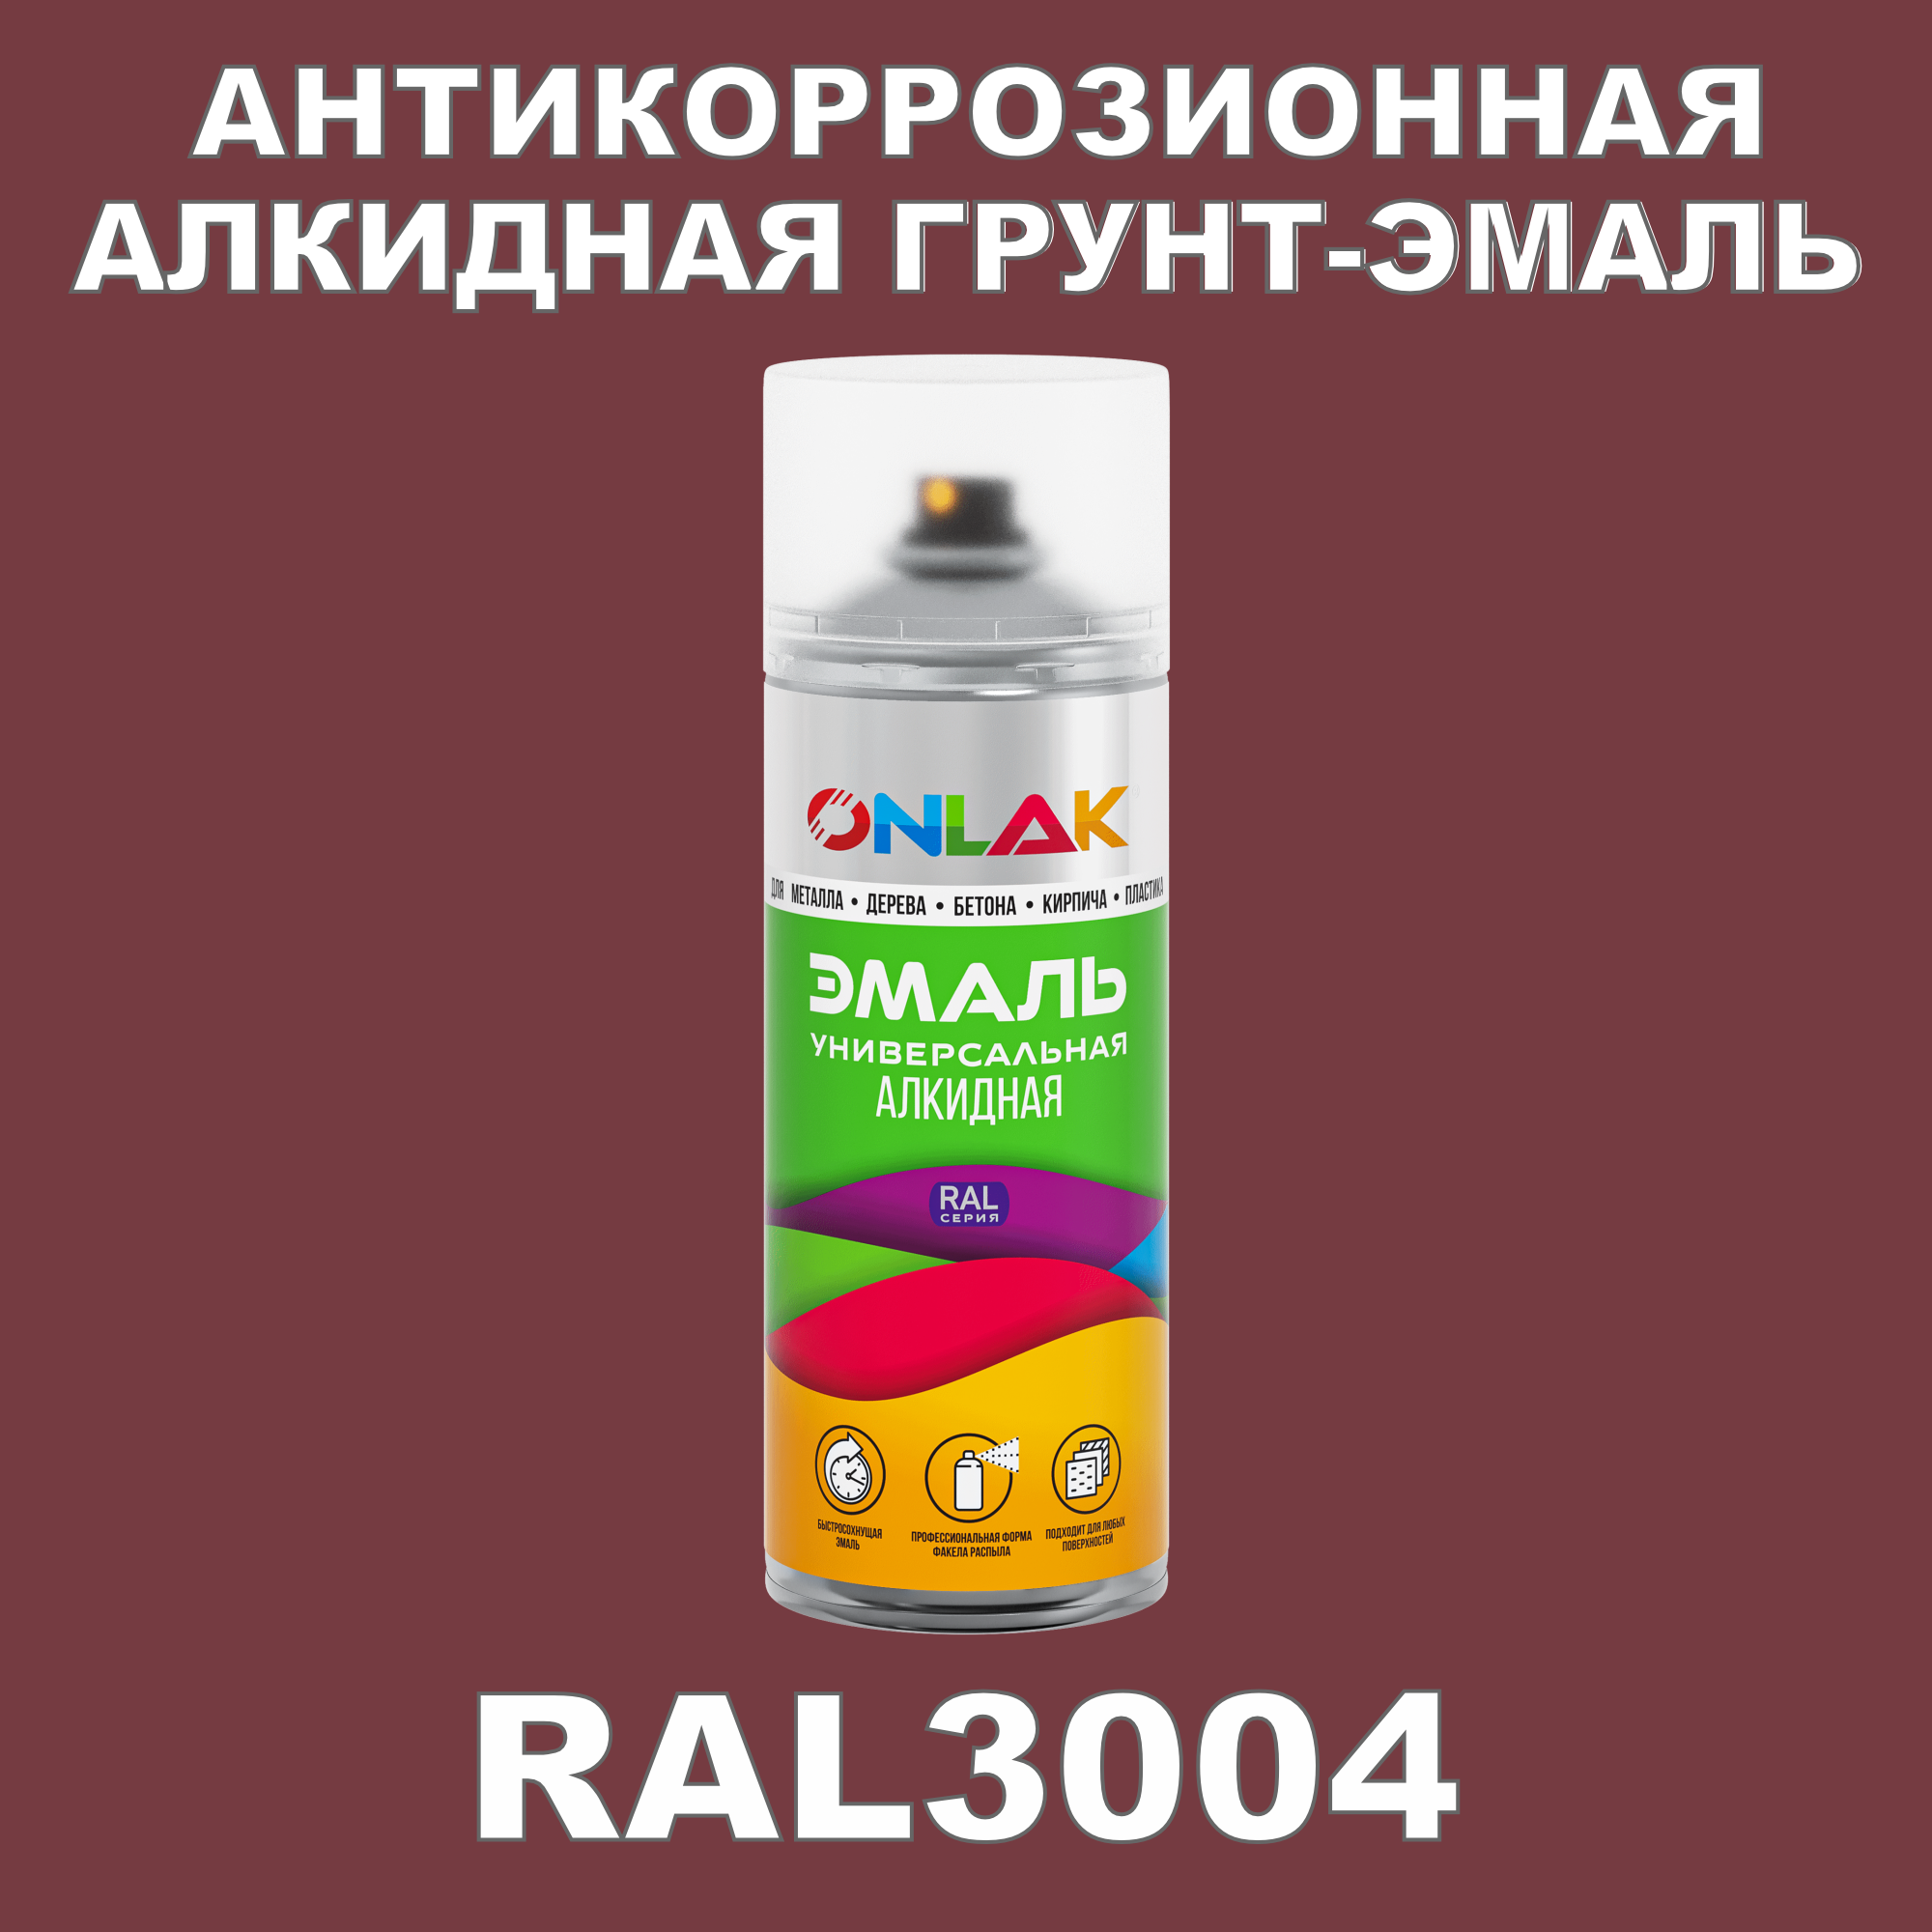 Антикоррозионная грунт-эмаль ONLAK RAL3004 матовая для металла и защиты от ржавчины антикоррозионная грунт эмаль onlak ral3004 матовая для металла и защиты от ржавчины